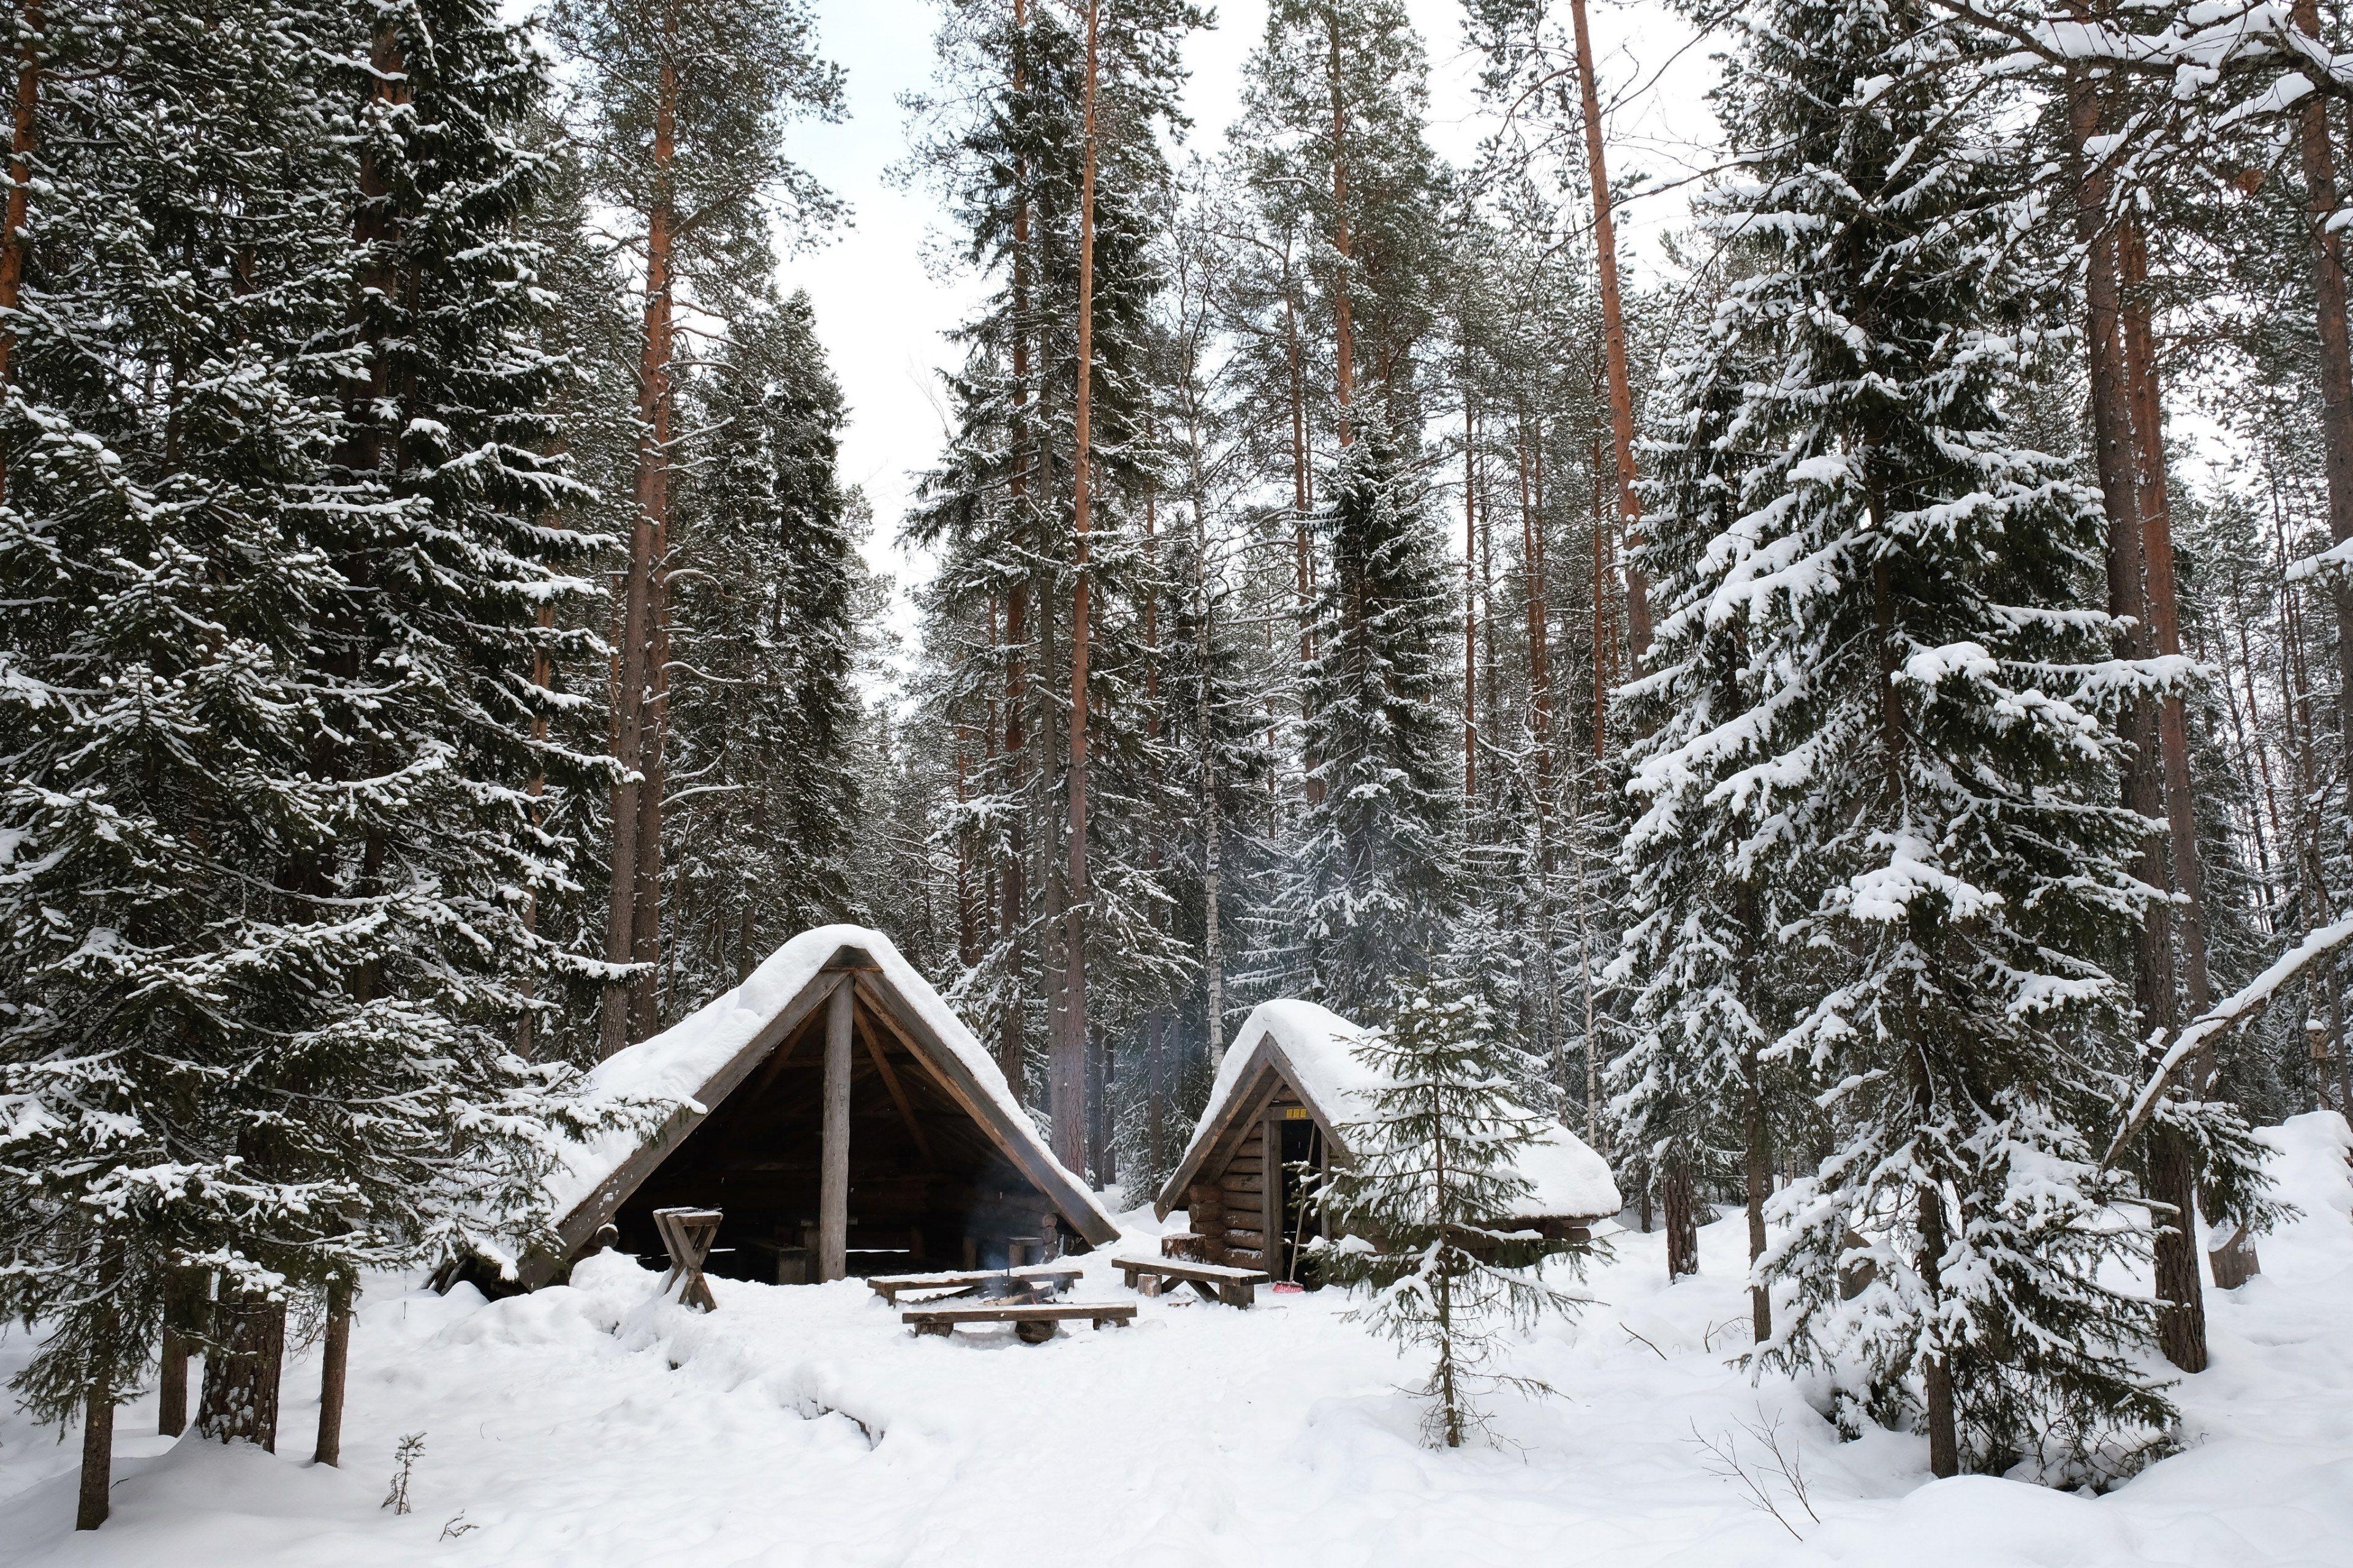 3840x2559 nhìn vào các cabin nhỏ bên trong một khu rừng ở rovaniemi trong